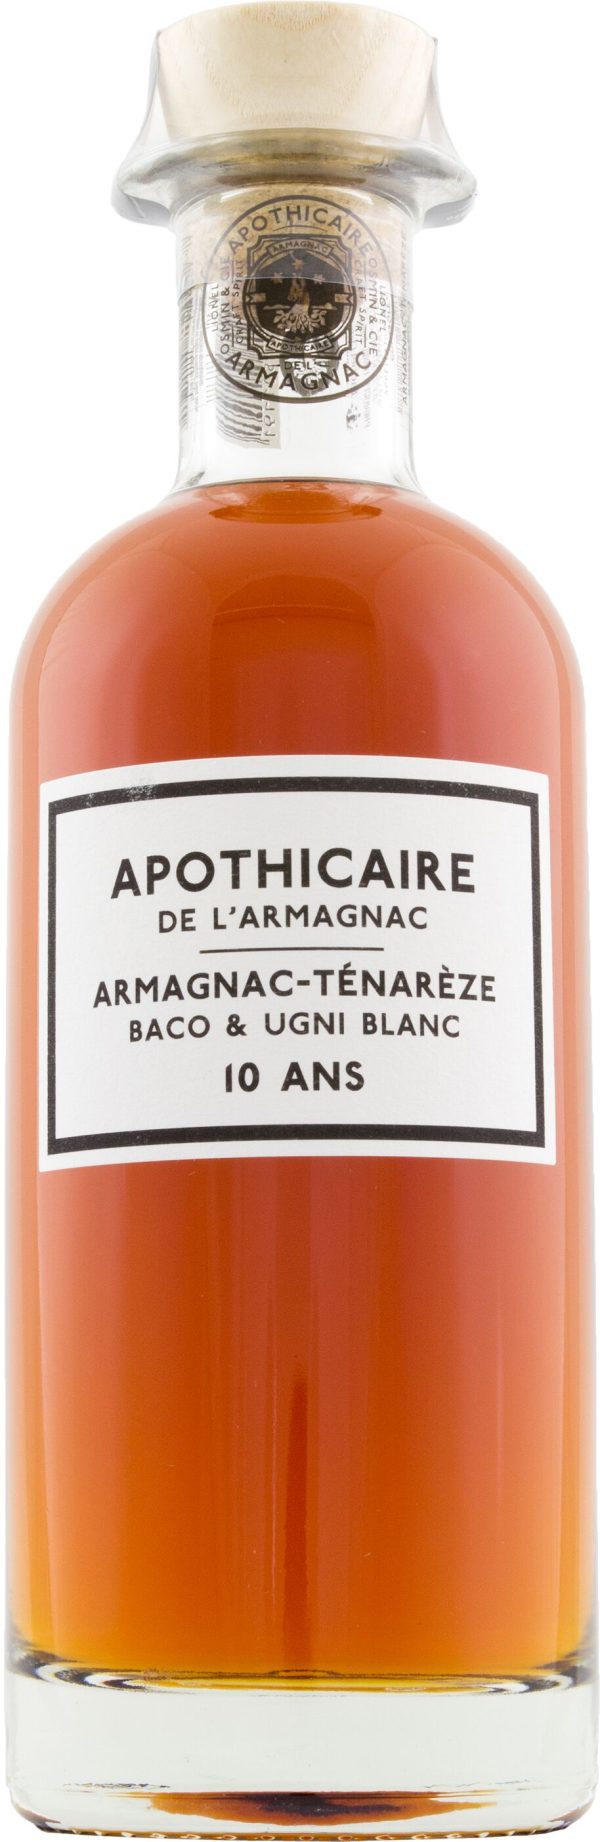 Apothicaire de L'Armagnac